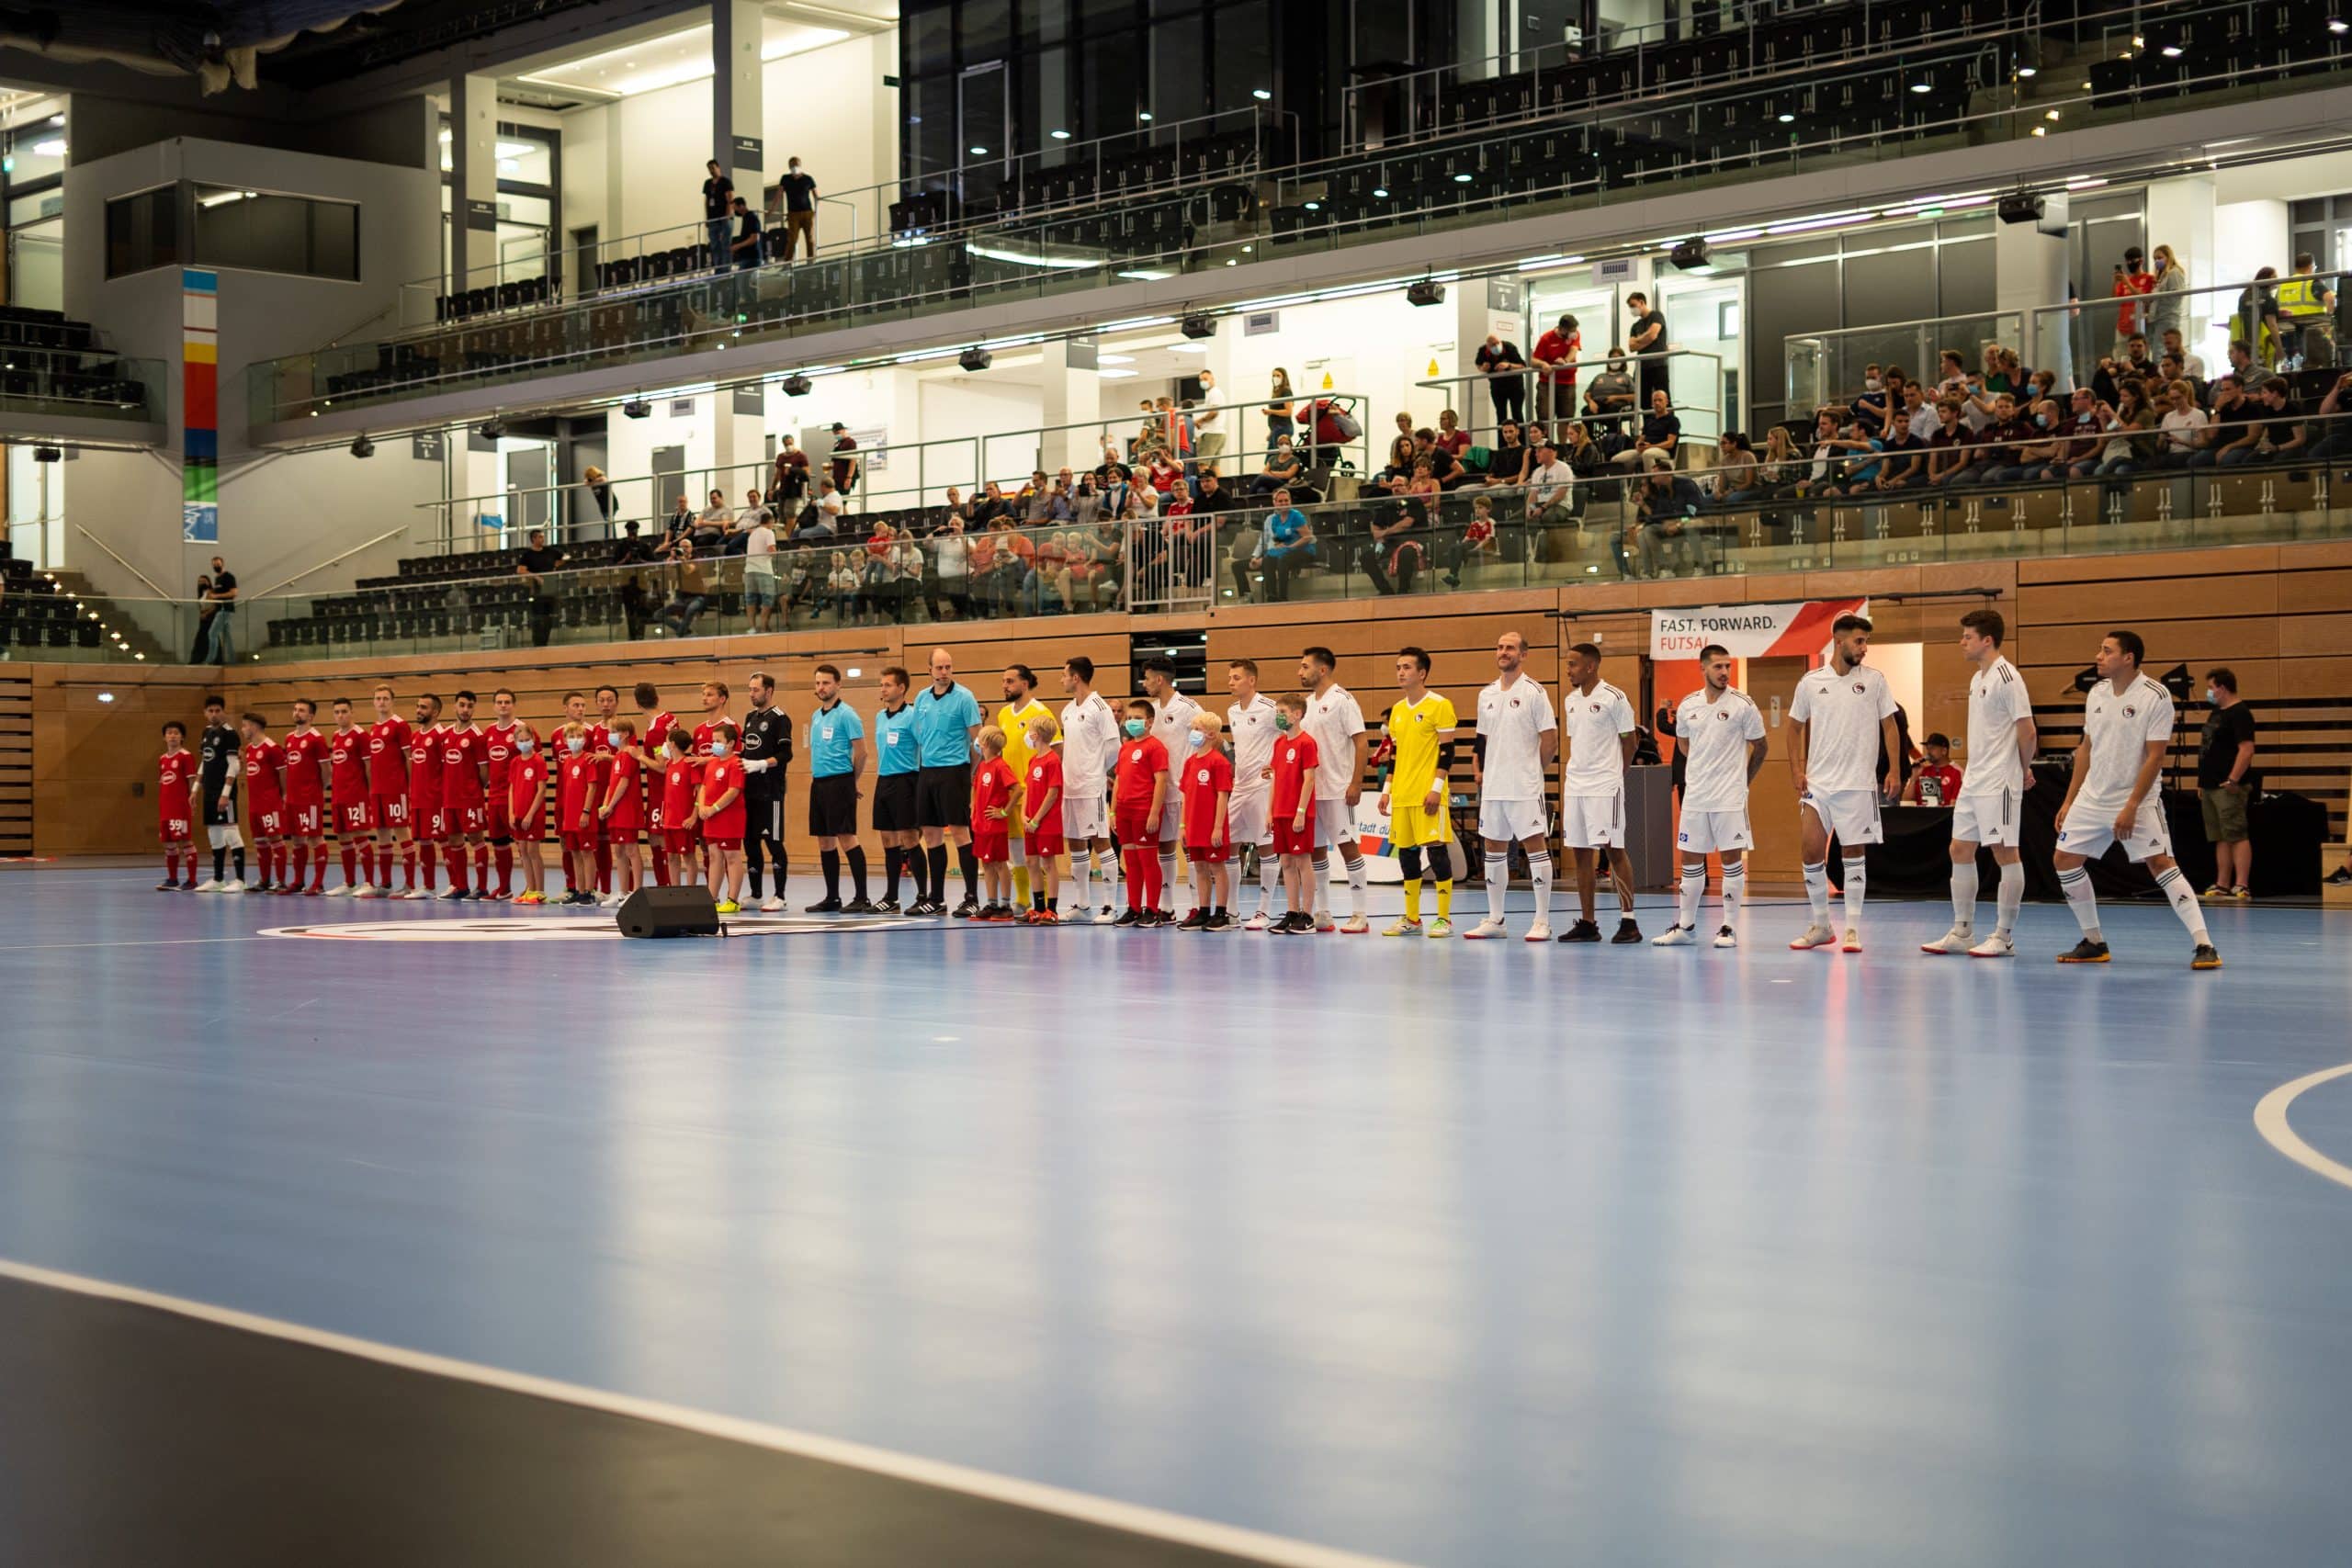 DSC03037 scaled - Die Futsal-Bundesliga geht in die Playoffs | Eine spannende Premierensaison im Überblick